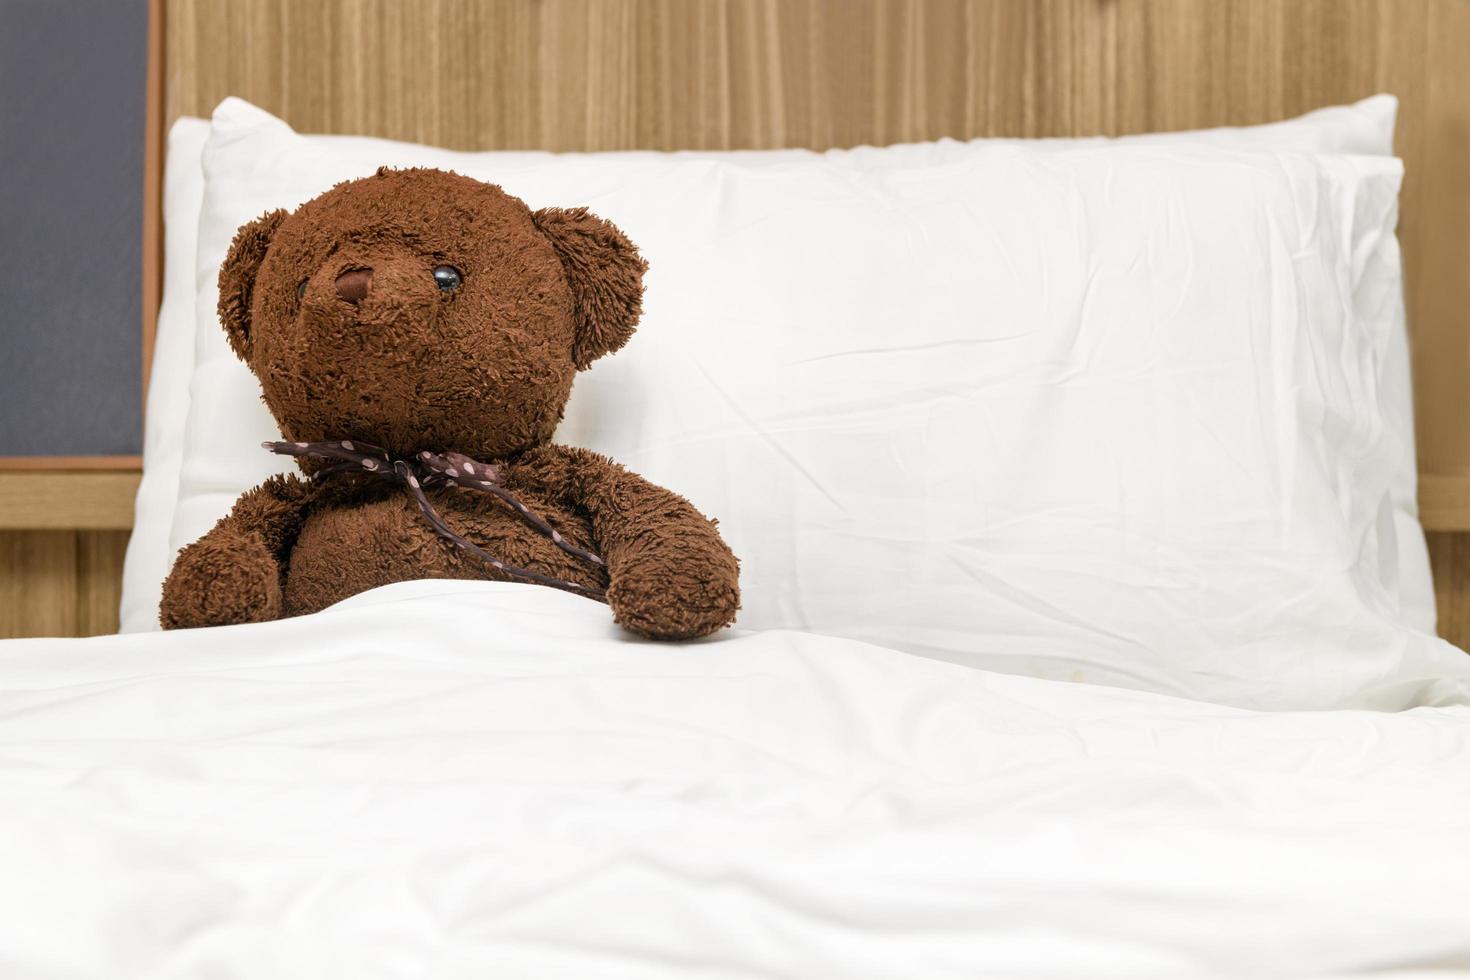 eenzaam teddy beer aan het liegen Aan de bed. concept over aan het wachten voor iemand foto